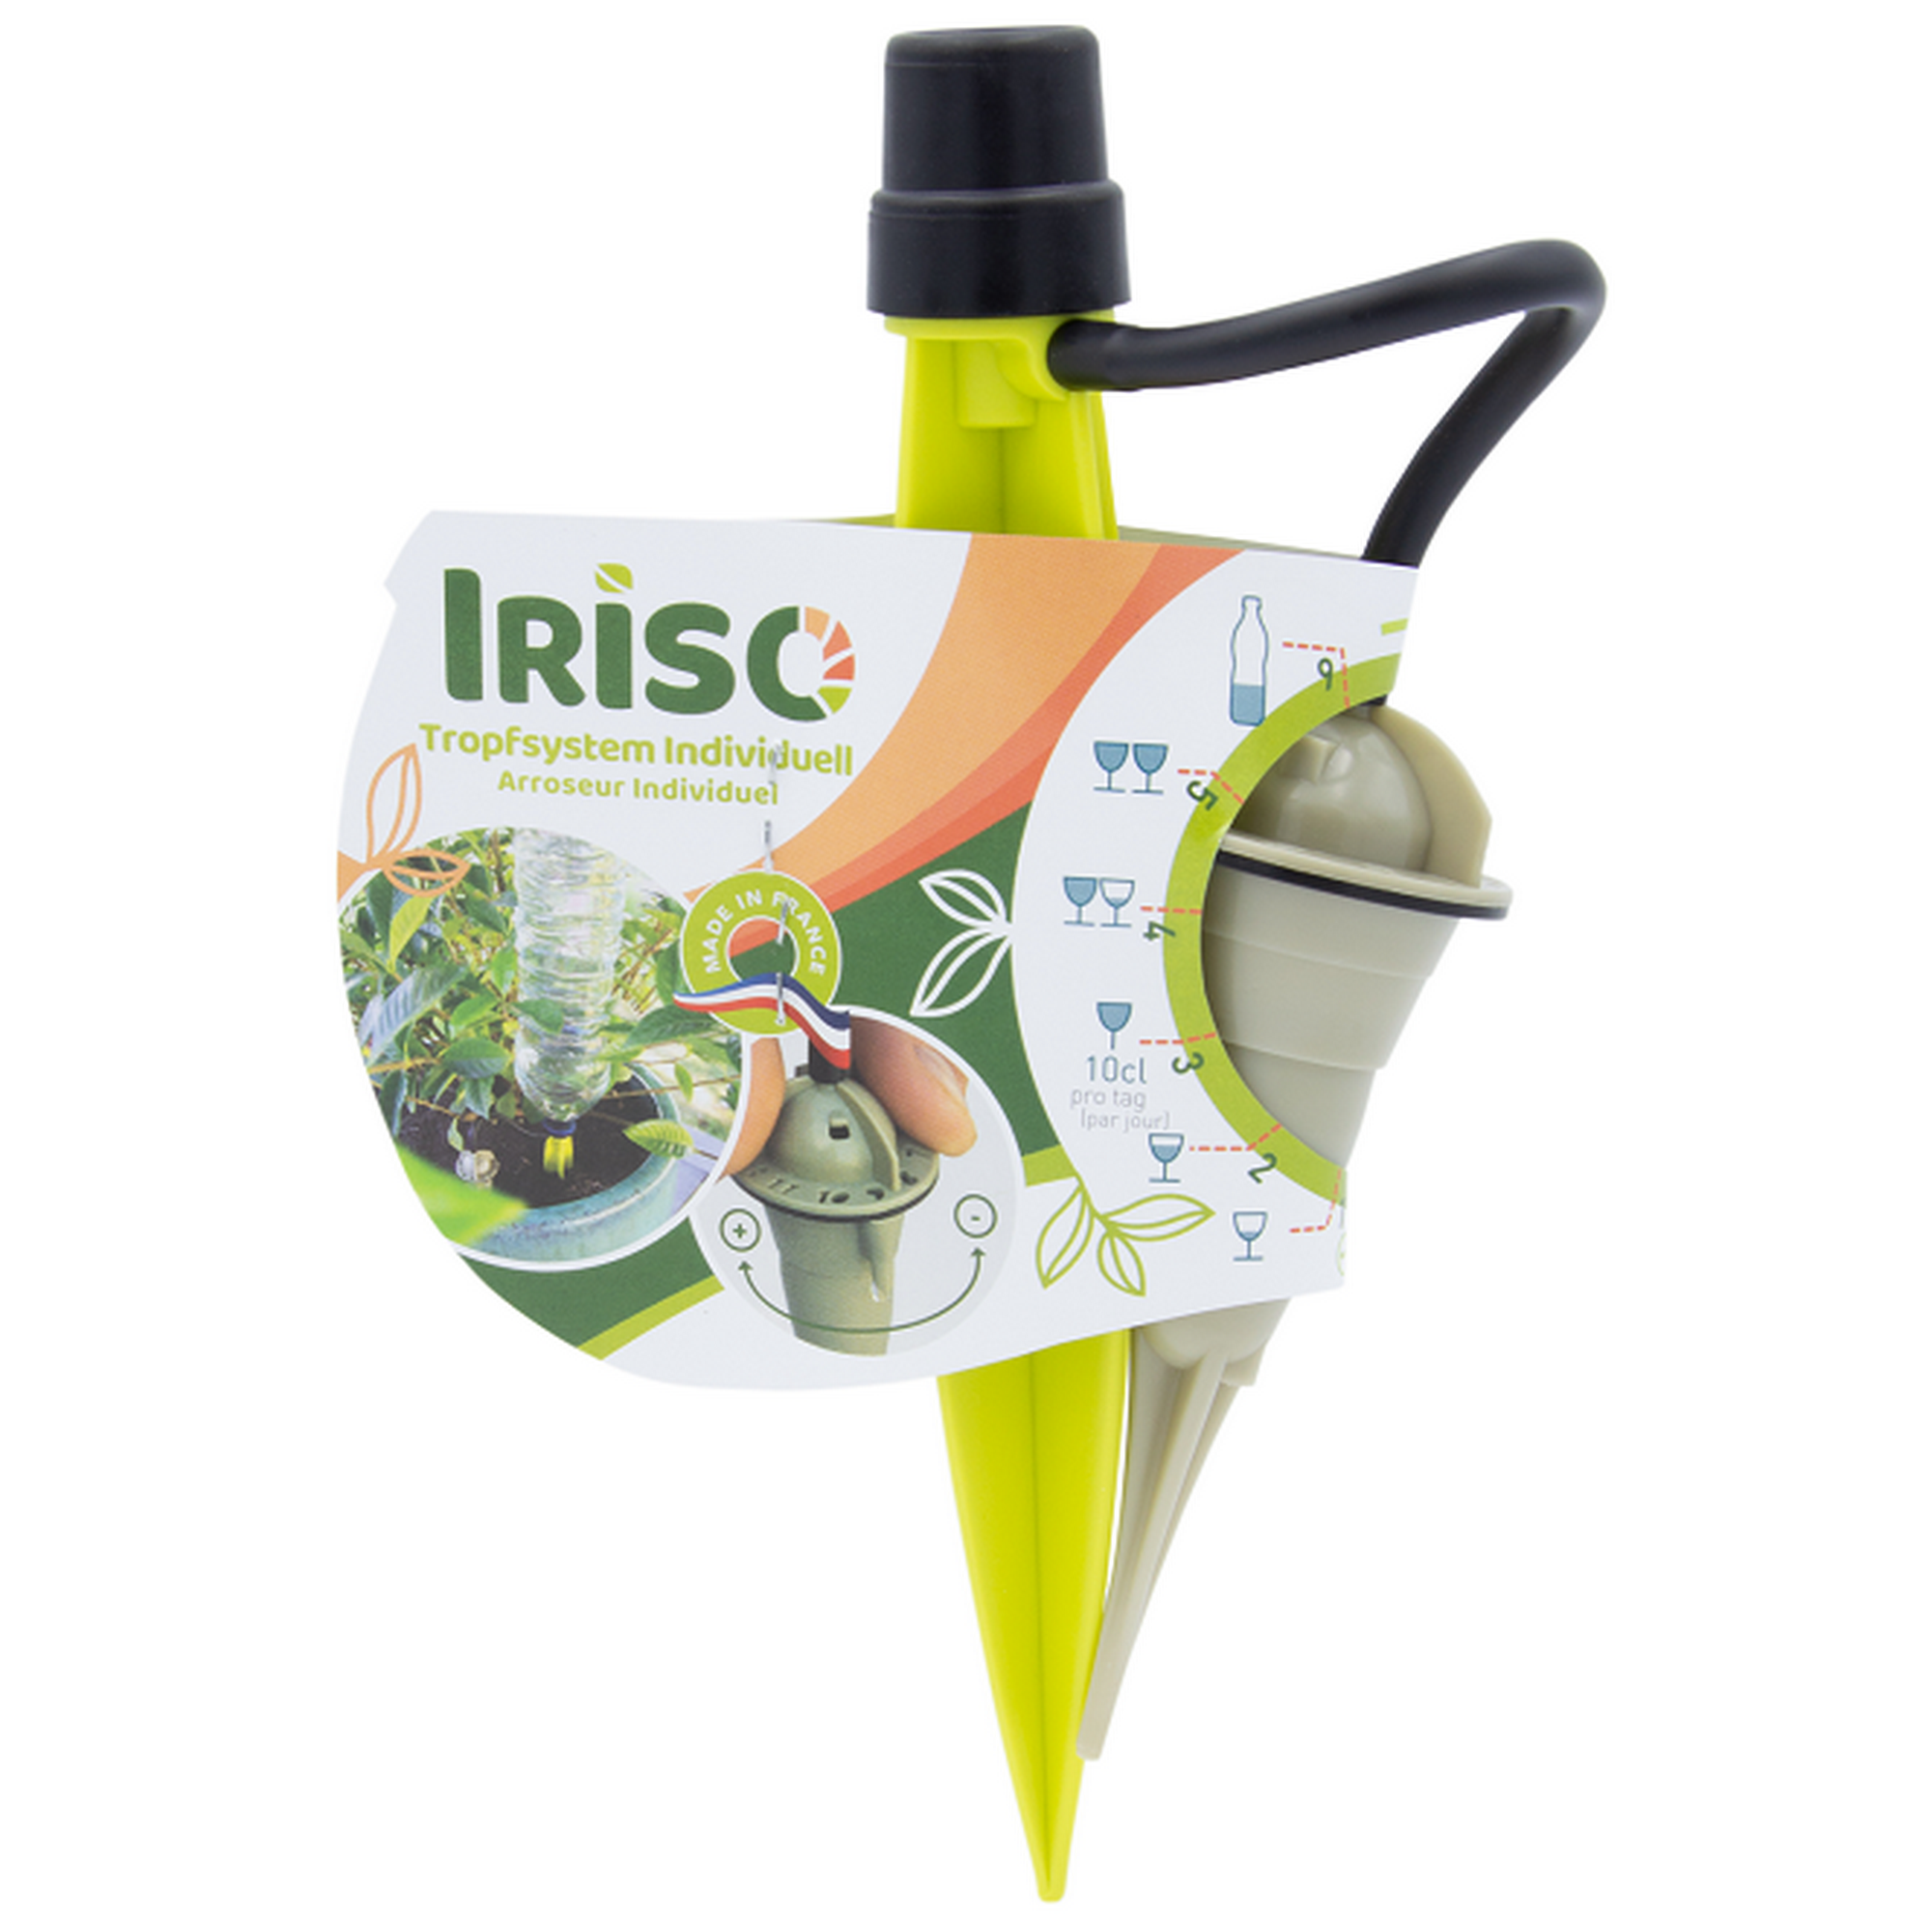 Tropfsystem 'Iriso' für Blumentopf + product picture